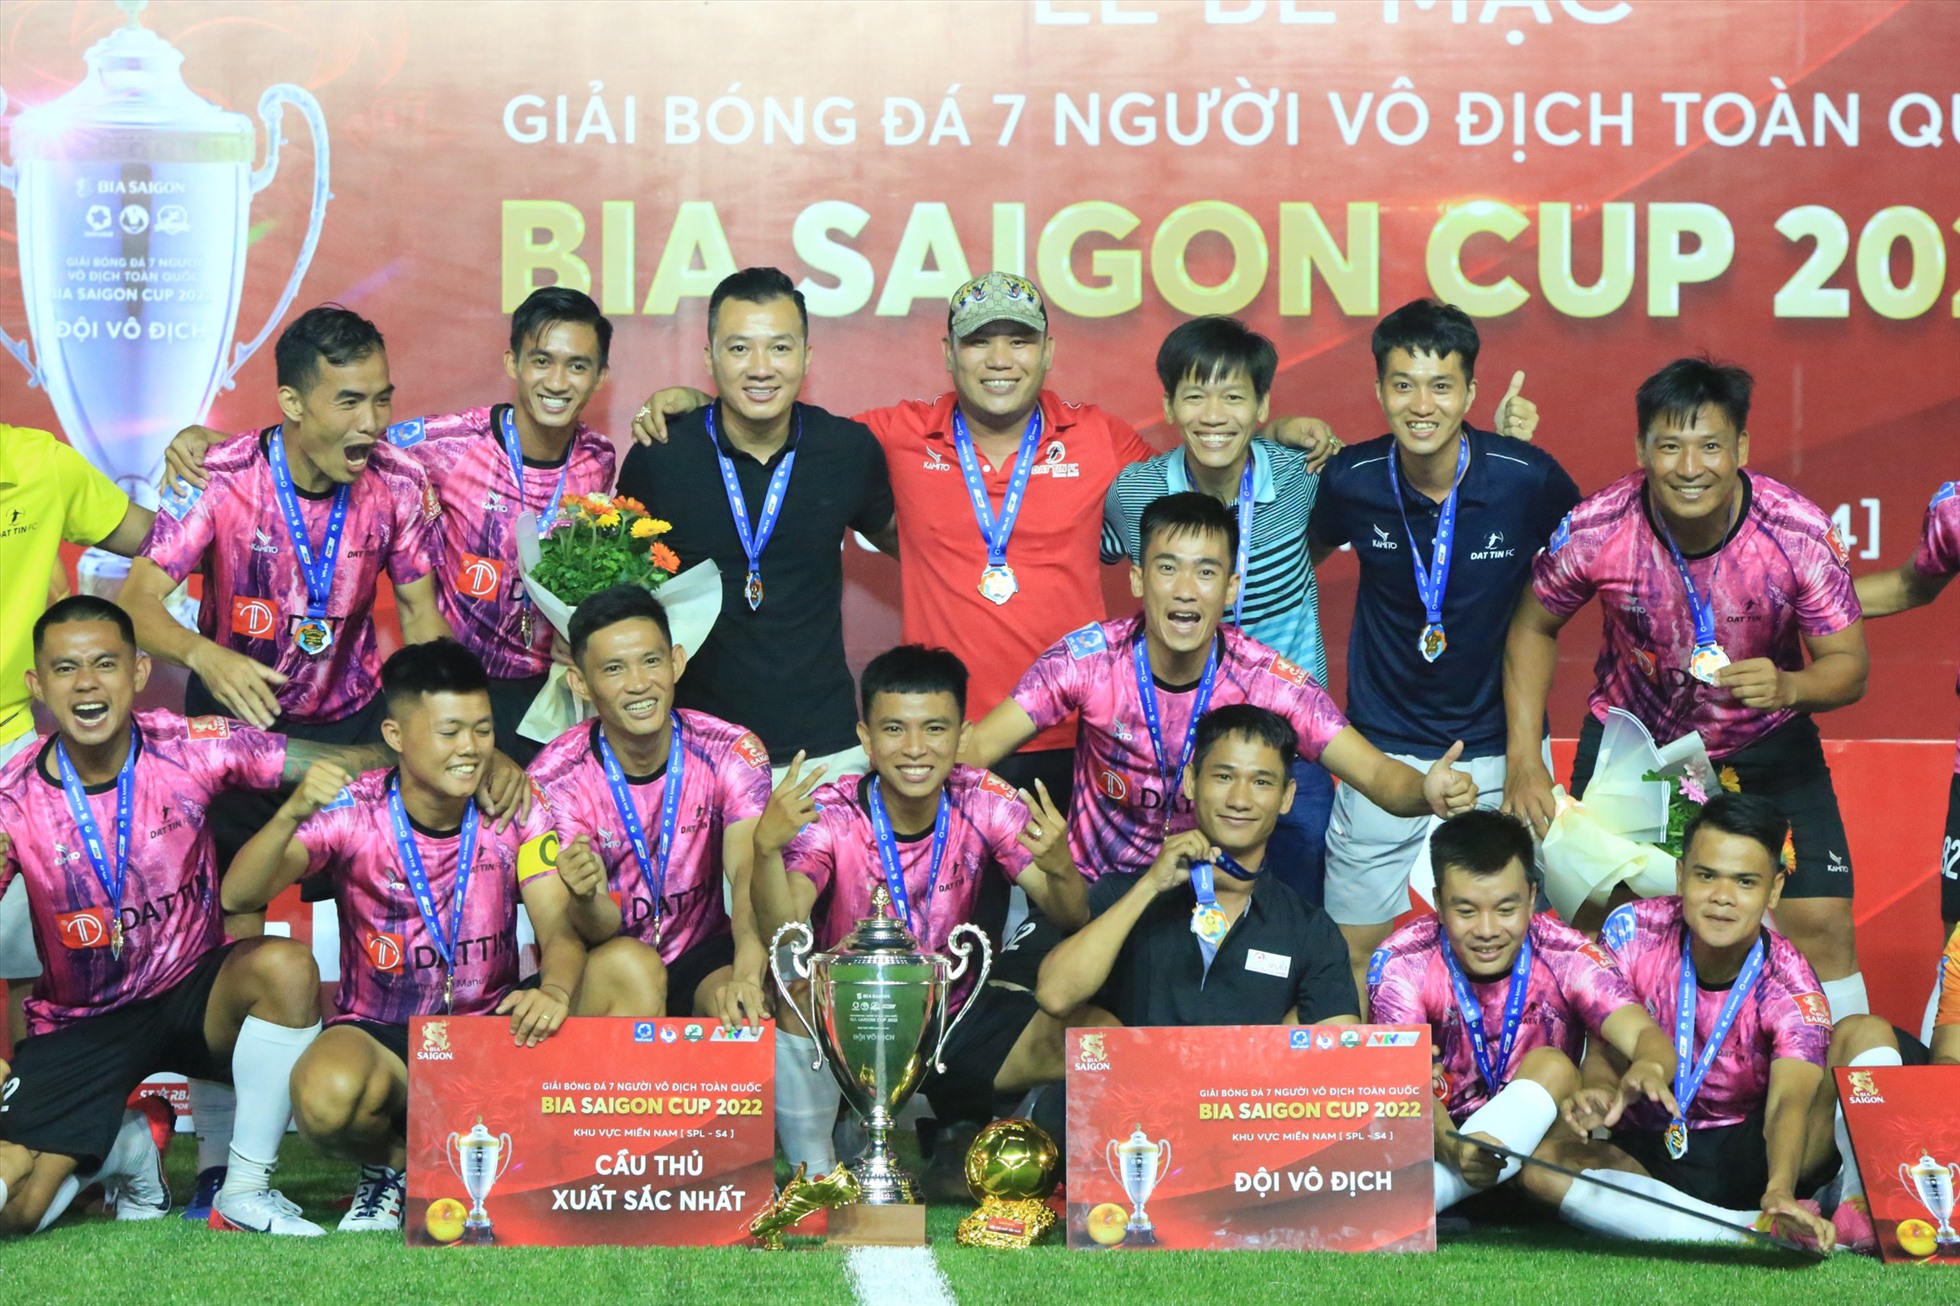 Bên cạnh chức vô địch, Đạt Tín còn thâu tóm luôn các danh hiệu cá nhân của SPL-S4 bao gồm: Huấn luyện viên xuất sắc (Phan Trần Tuấn Anh), Cầu thủ xuất sắc (Nguyễn Hồng Long) và Vua phá lưới (Nguyễn Hồng Long).